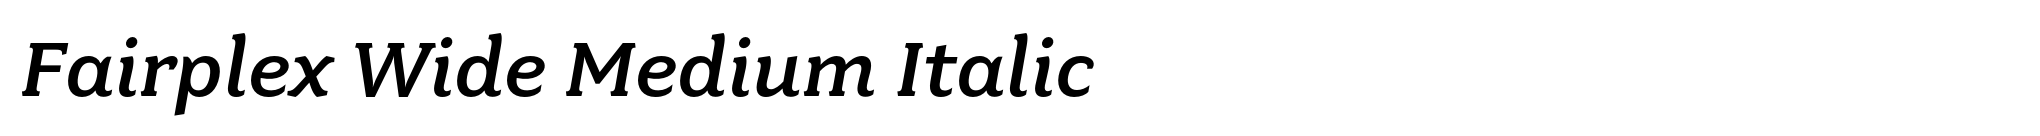 Fairplex Wide Medium Italic image